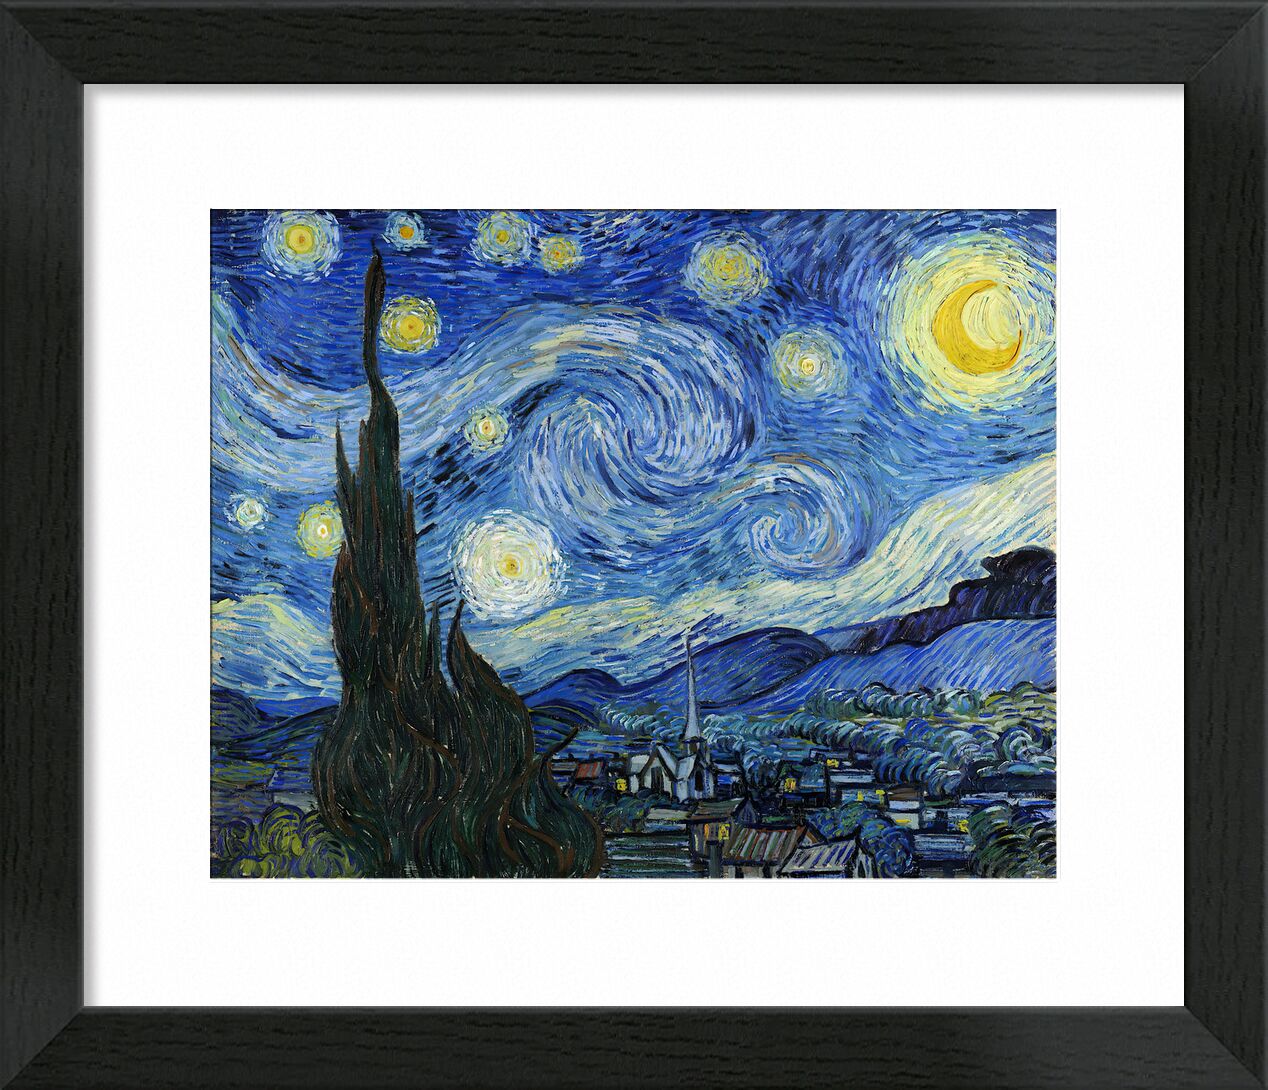 The Starry Night - VINCENT VAN GOGH 1889 von Bildende Kunst, Prodi Art, VINCENT VAN GOGH, Astra, Malerei, Dorf, Baum, Sterne, Nacht, Berge, Tal